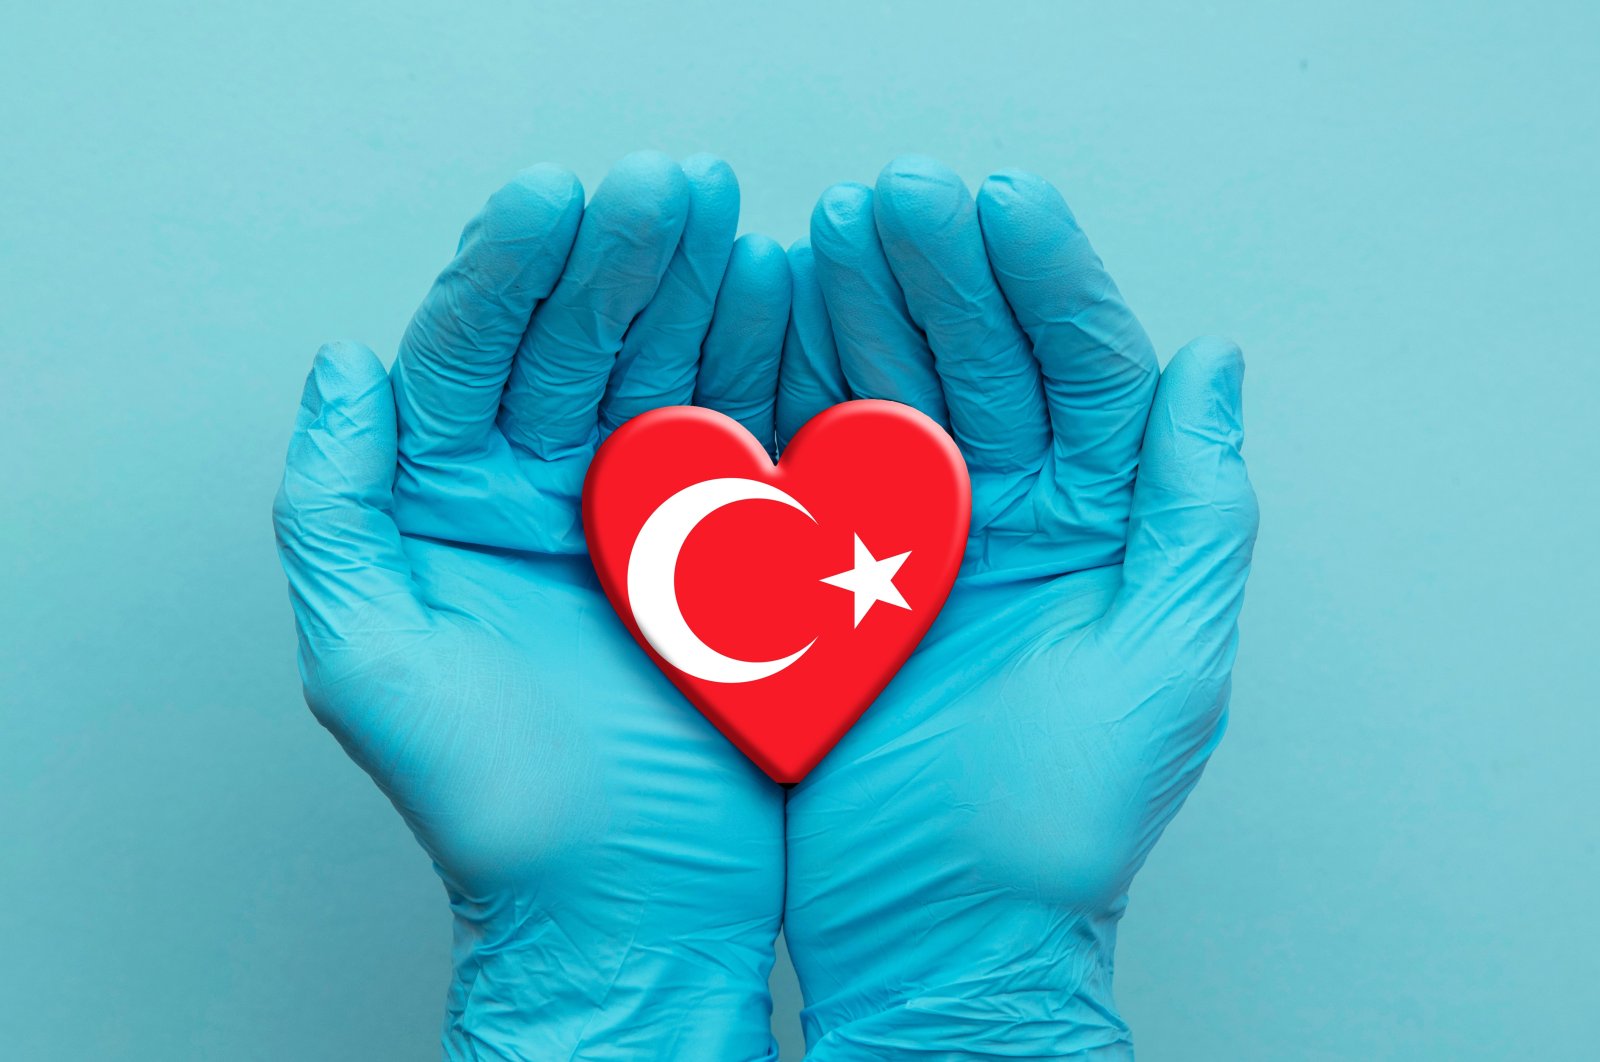 Turki sebagai pusat perawatan kesehatan dunia